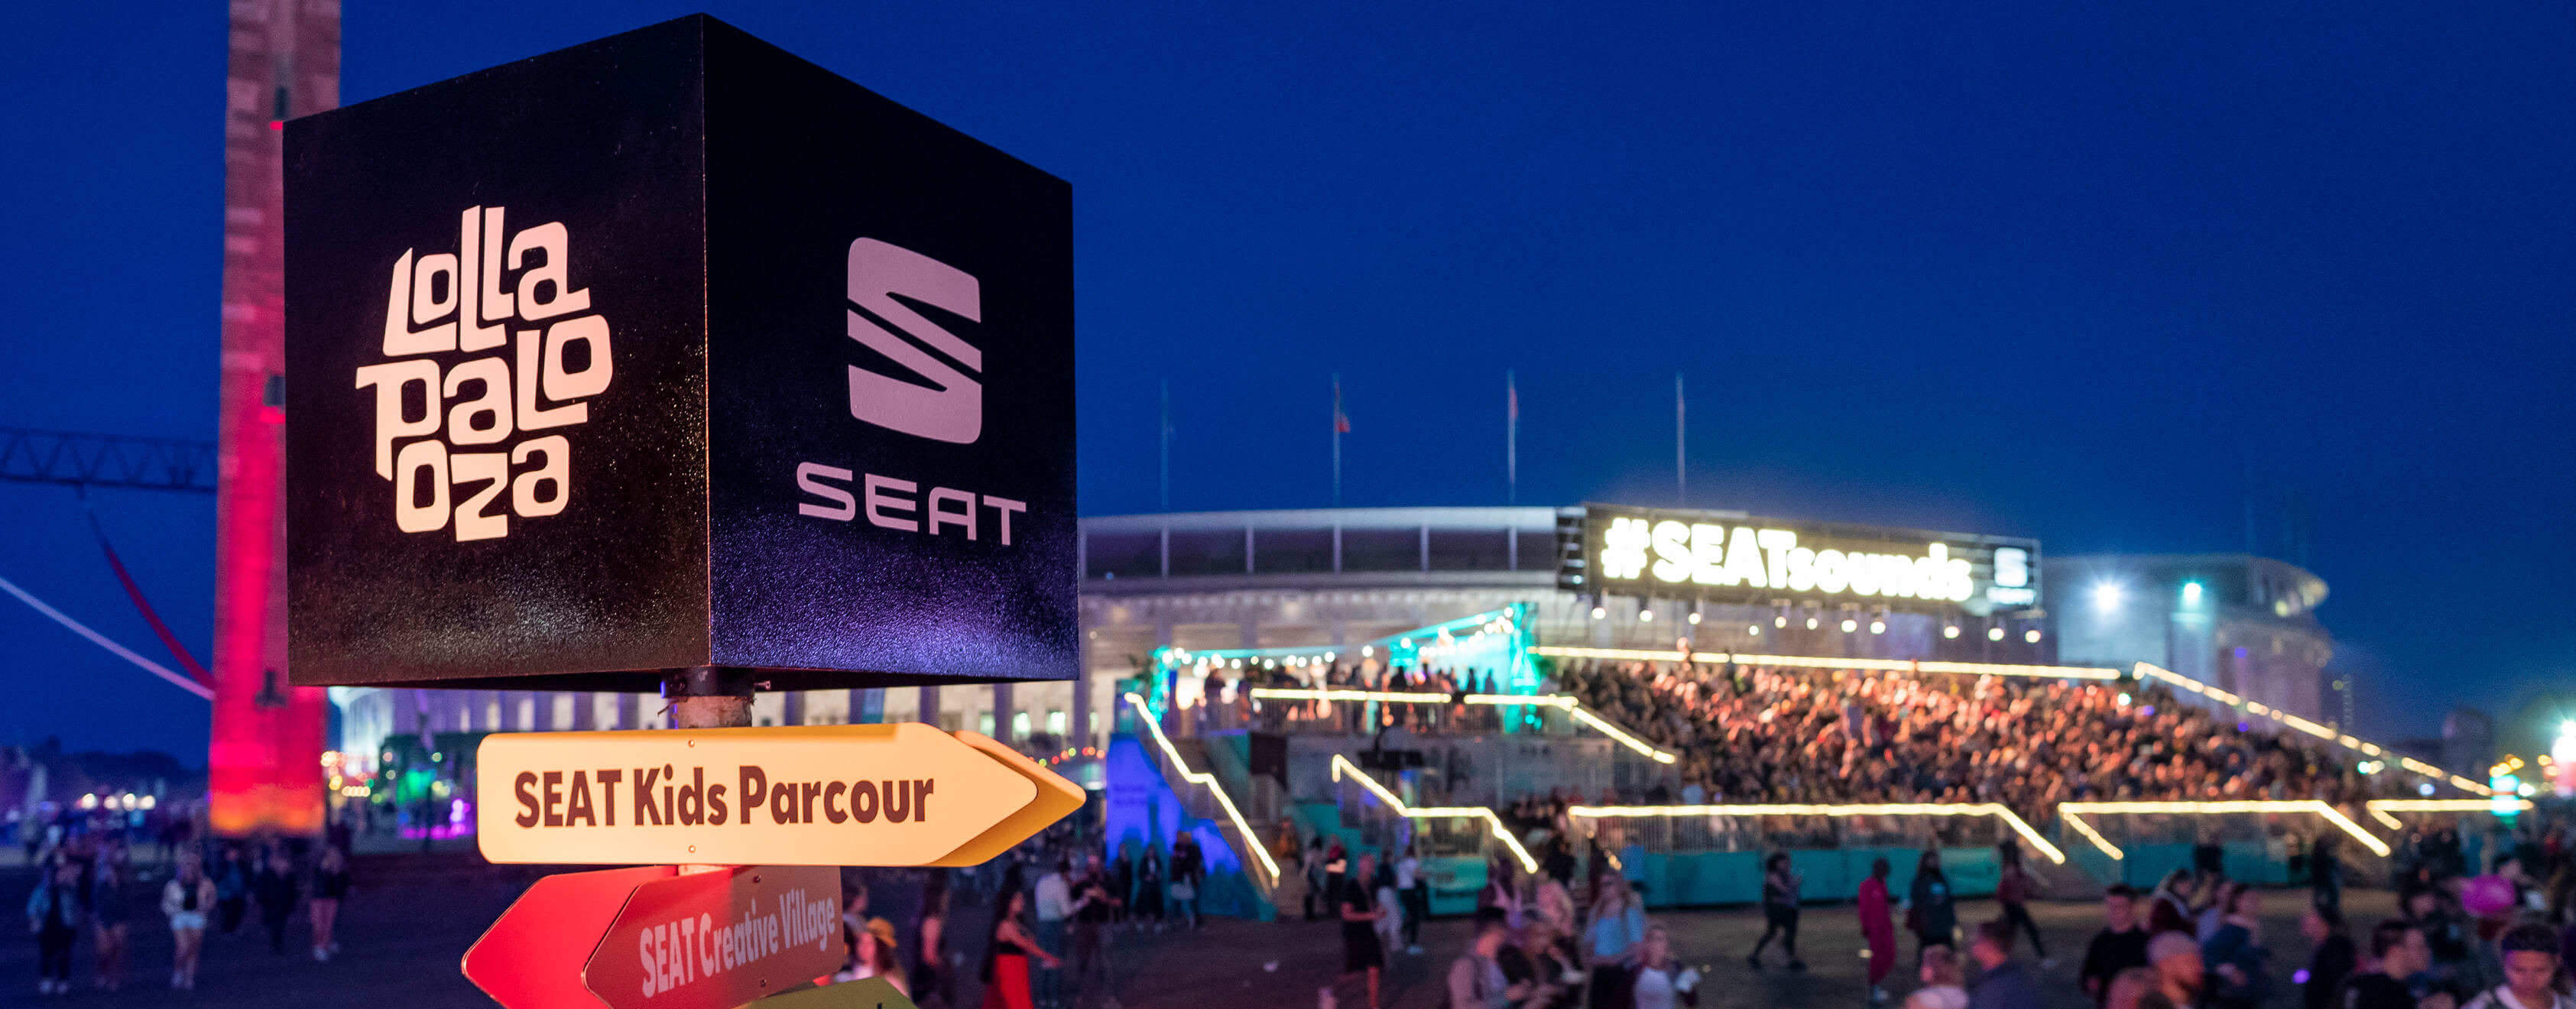 Lollapalooza muusikafestivali SEATi alade märgid ja logo – sponsor SEAT